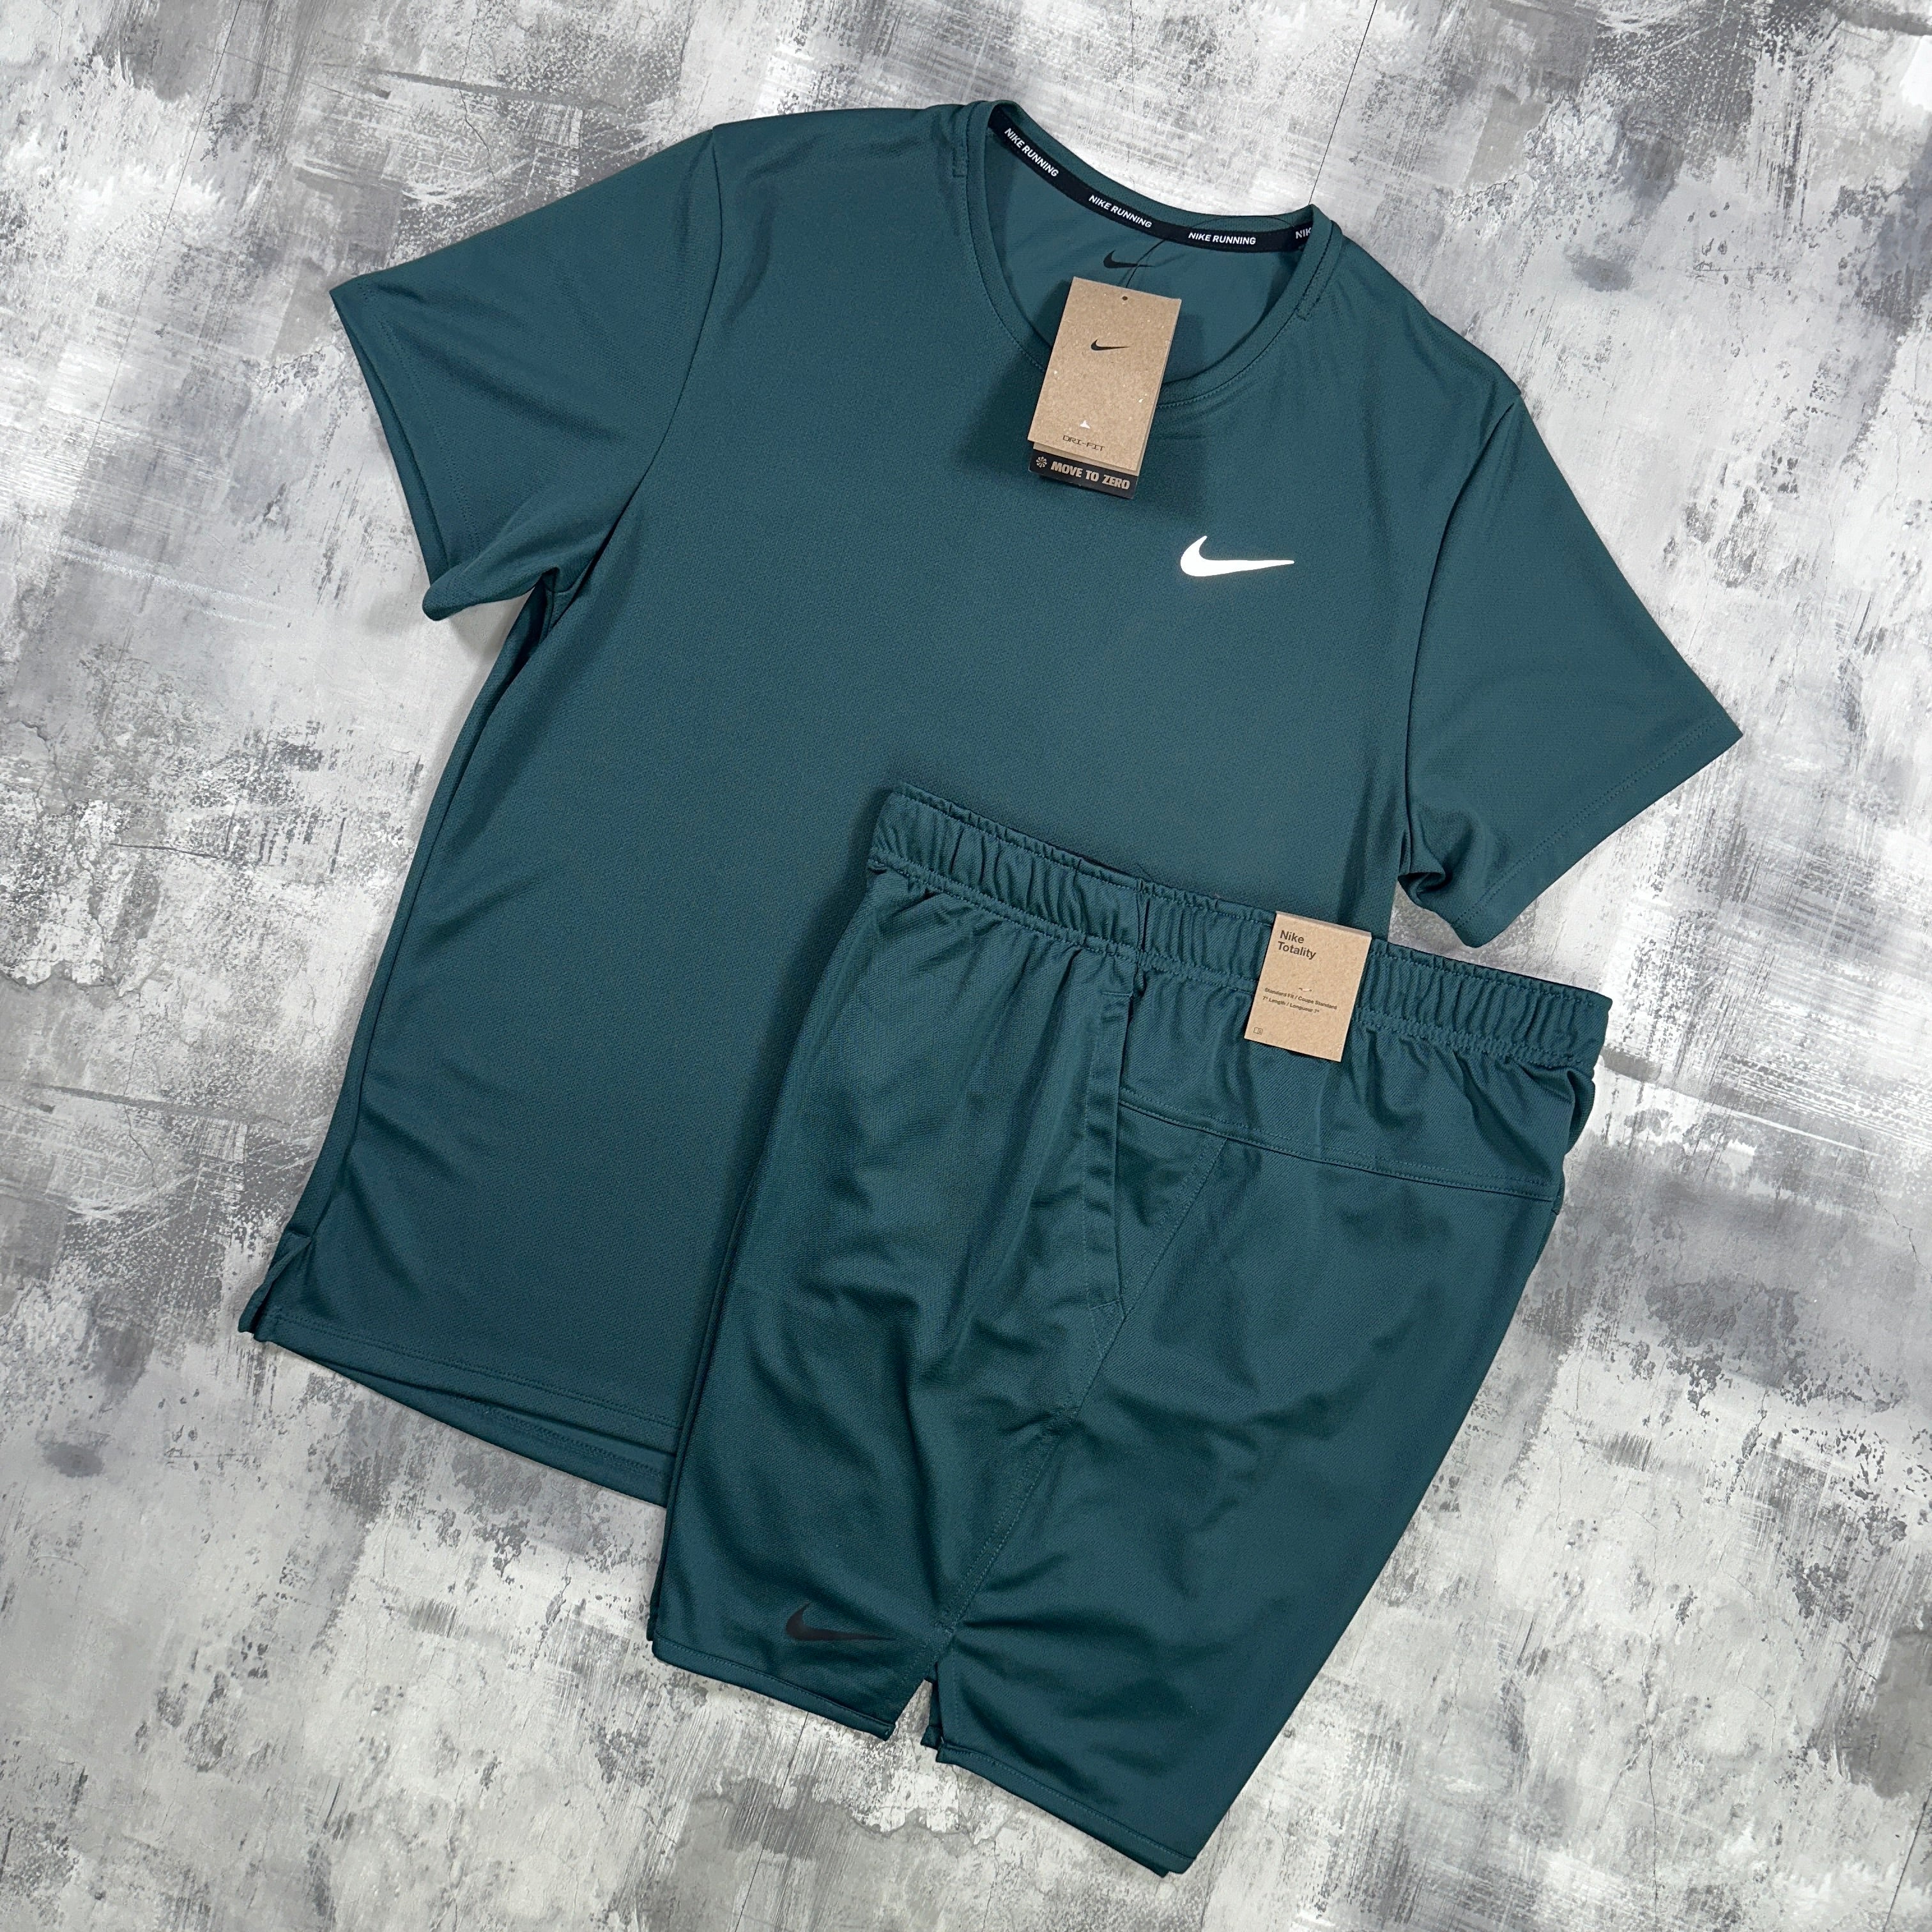 Nike Miler set Jungle Green - t-shirt and shorts